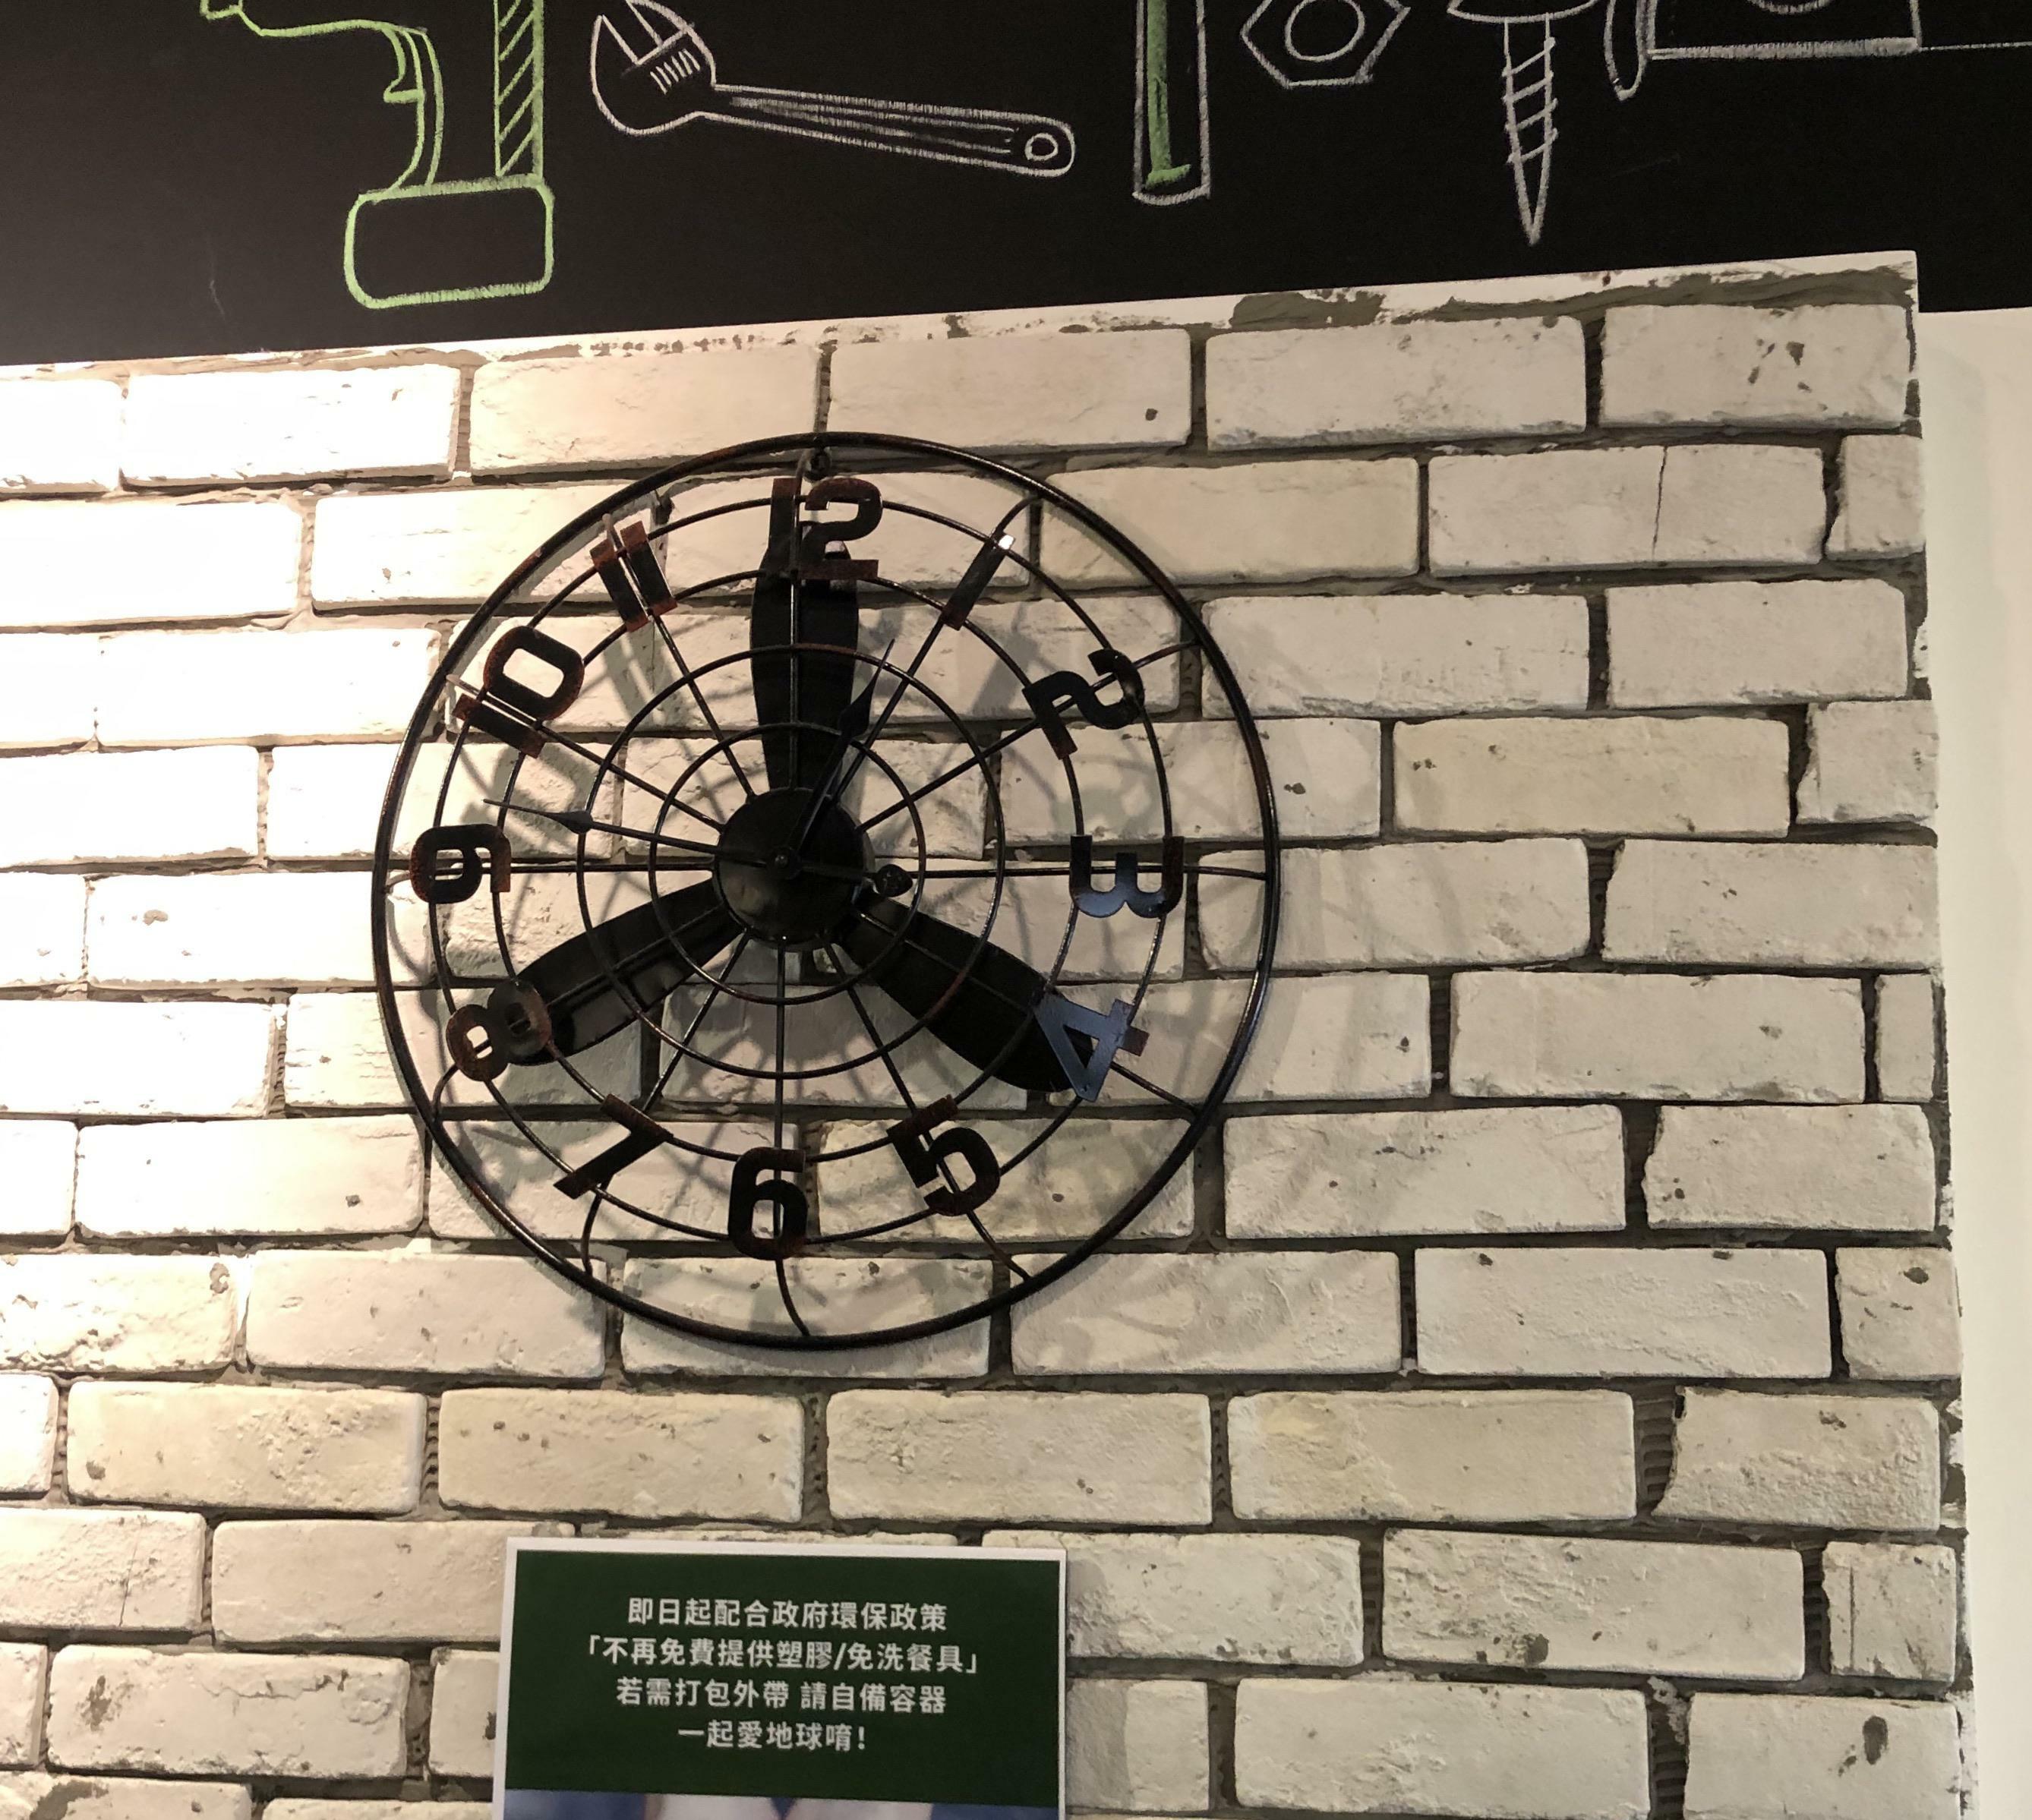 Cette horloge. Peux-tu me dire quelle heure il est ?